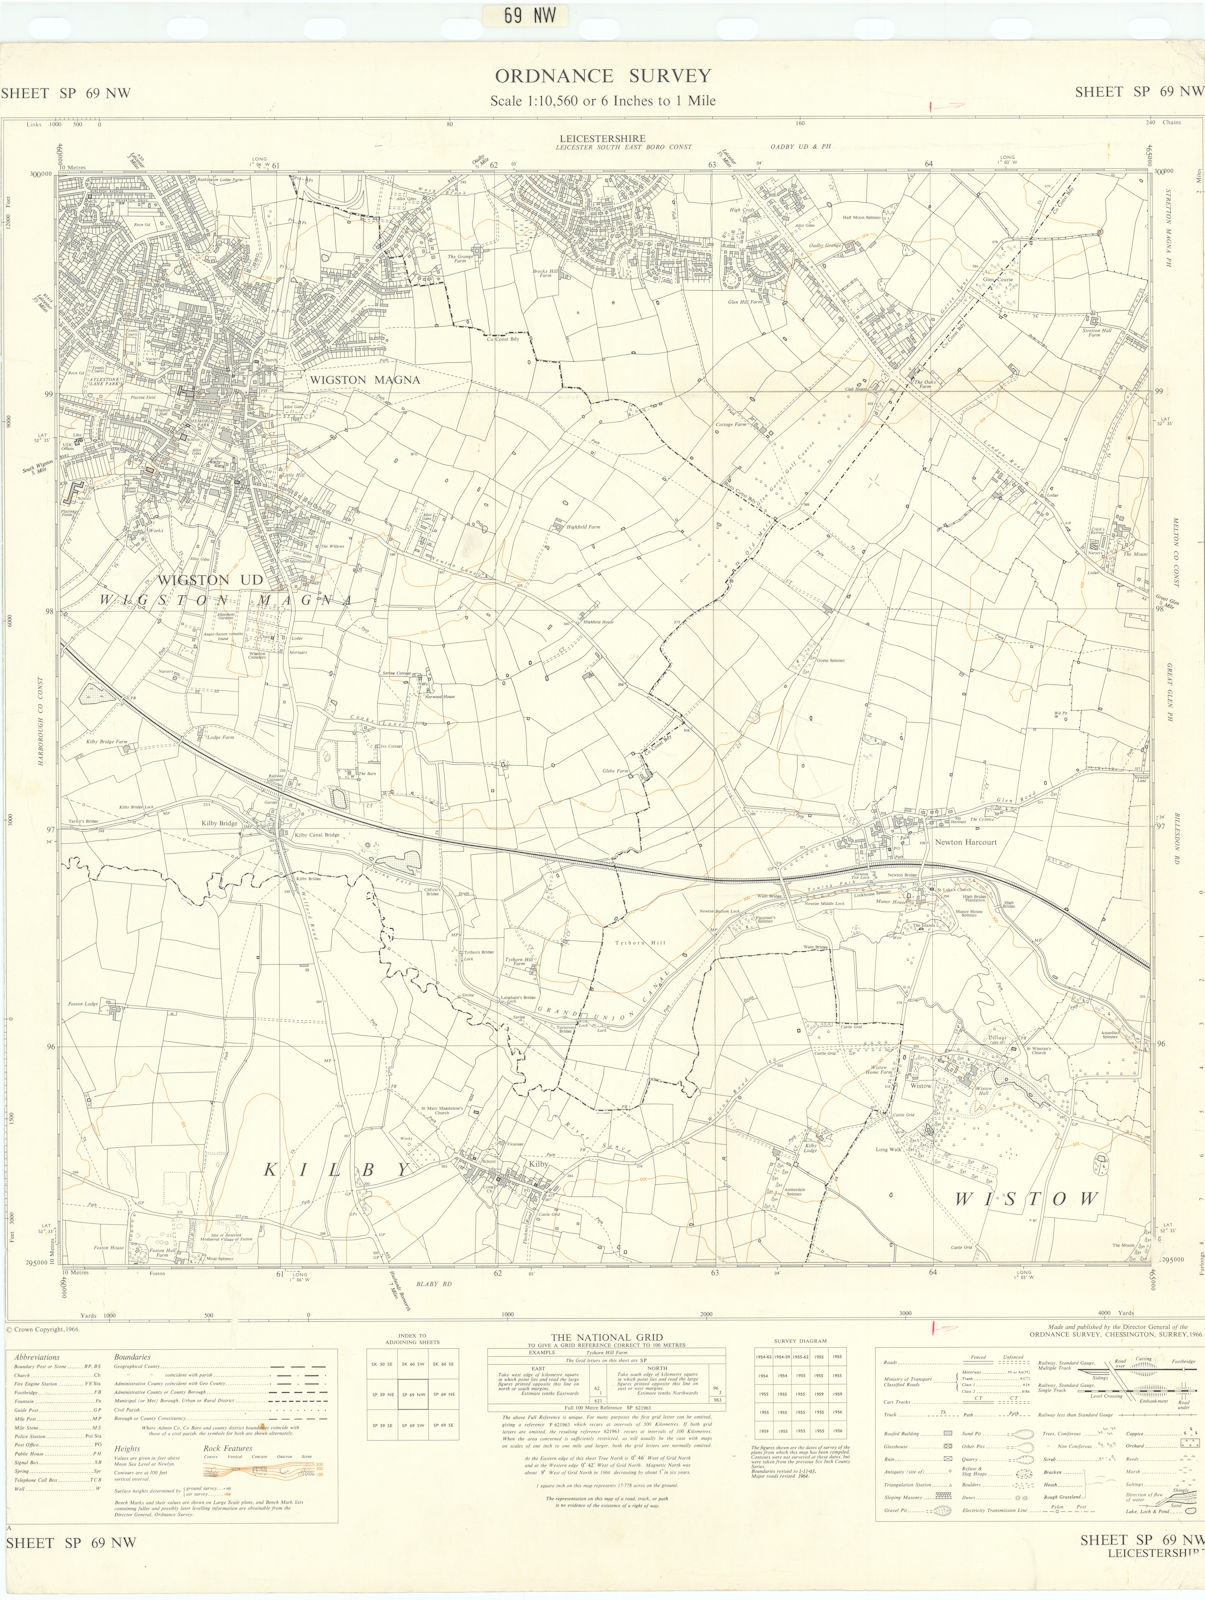 Ordnance Survey SP69NW Leics Wigston Magna Kilby Newton Harcourt 1966 old map